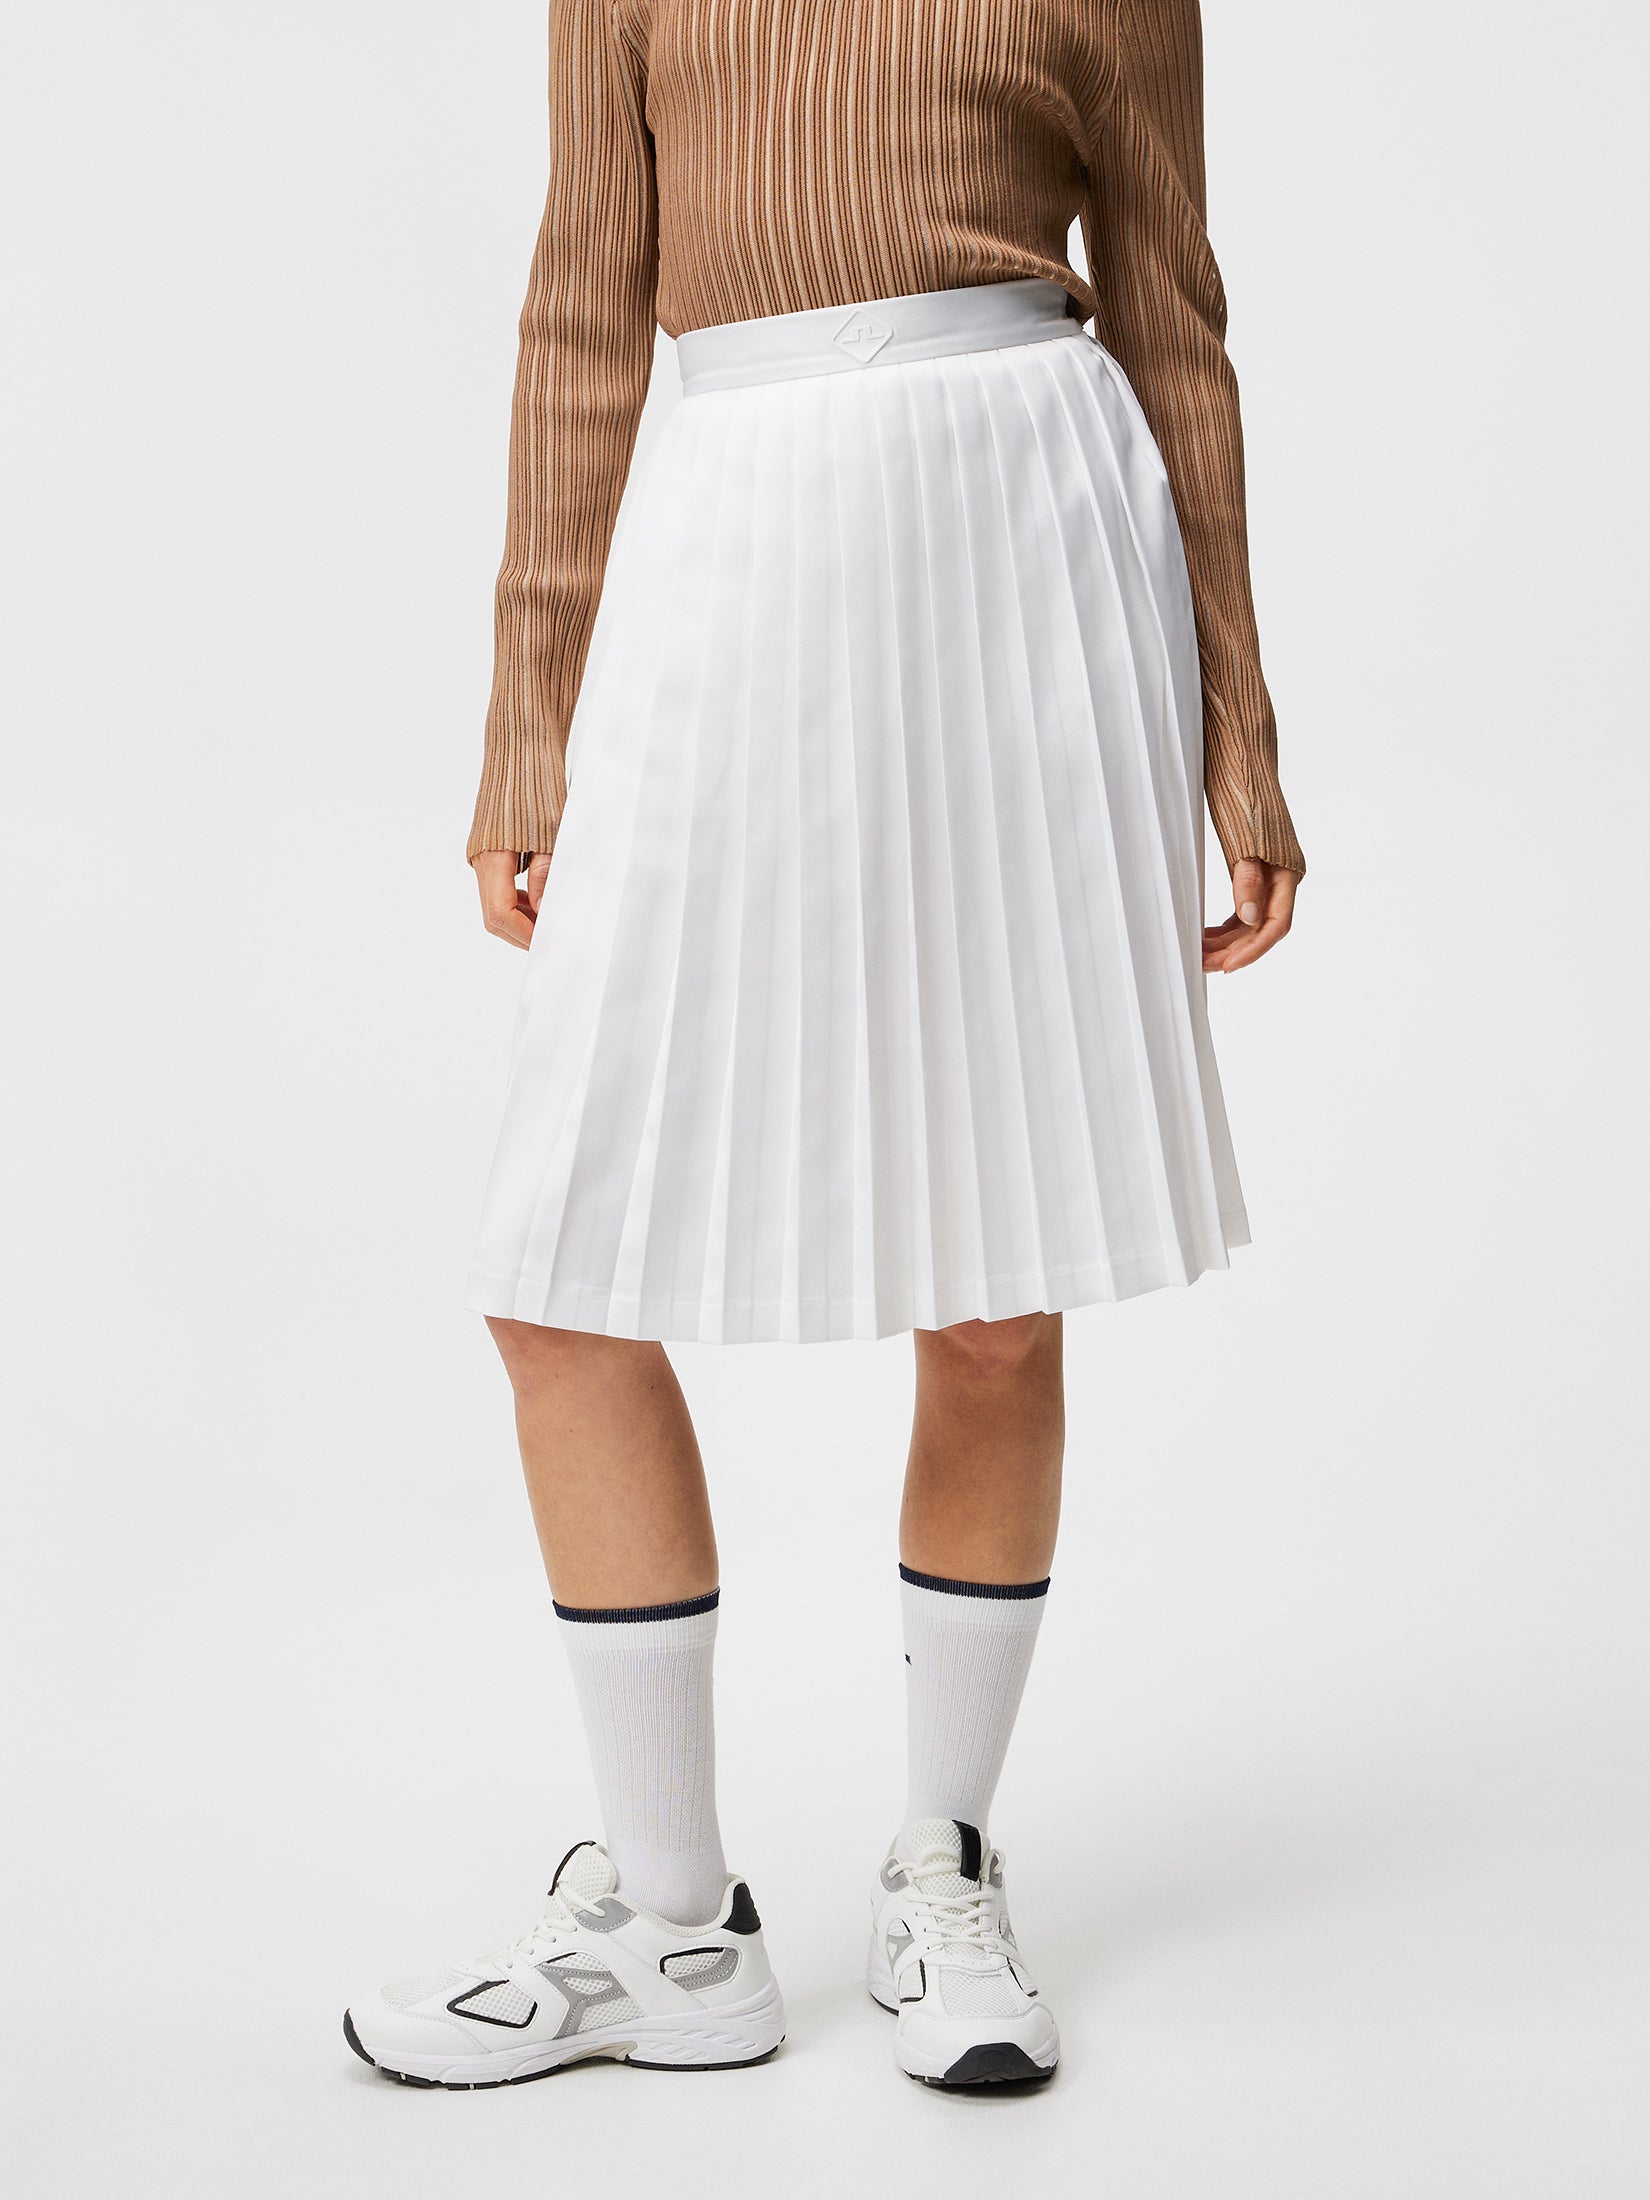 제이린드버그 J.LINDEBERG Dorothea Pleated Skirt,White